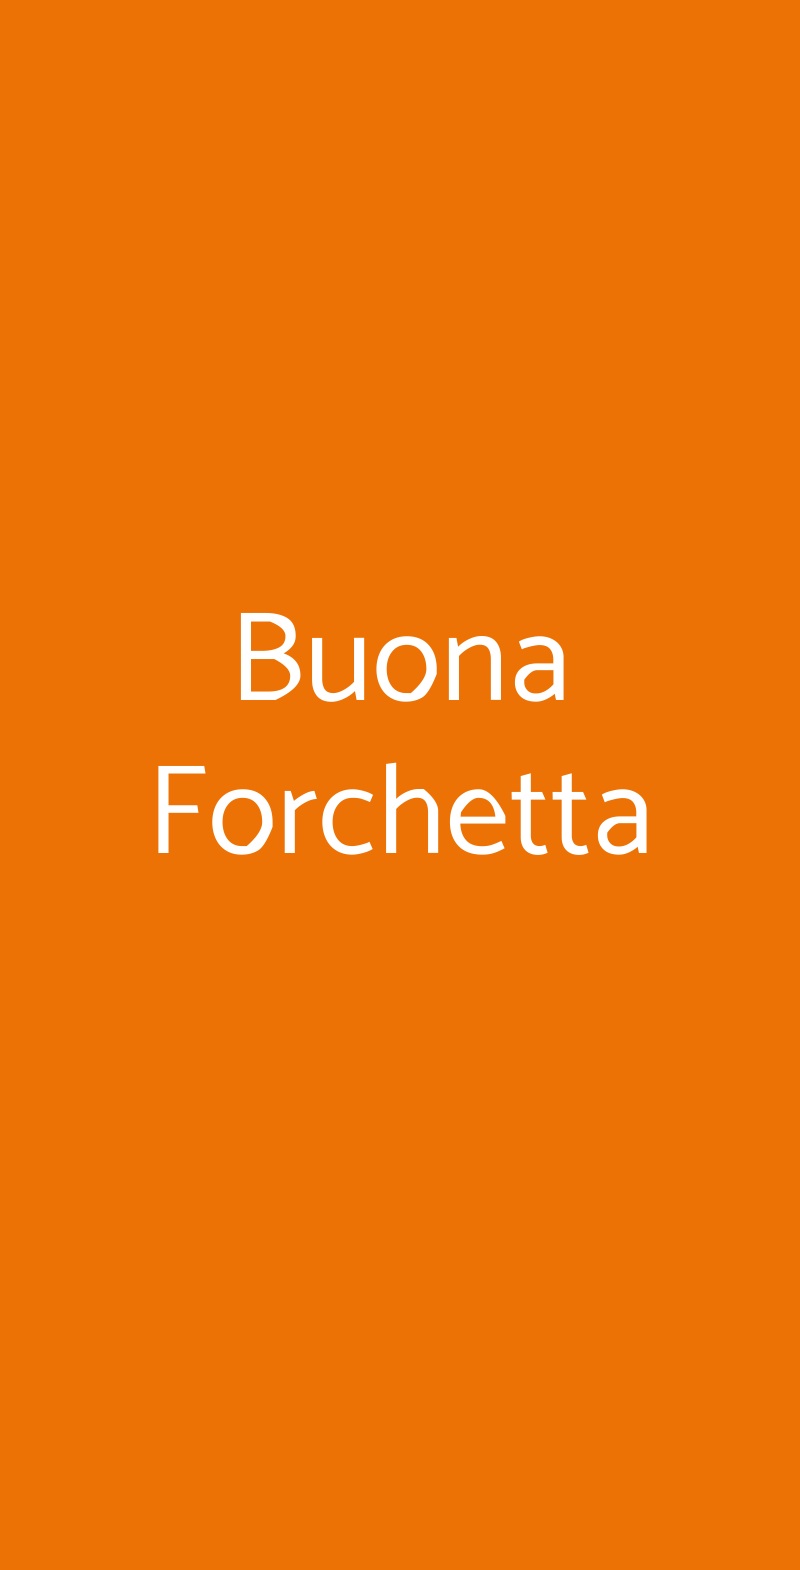 Buona Forchetta Milano menù 1 pagina